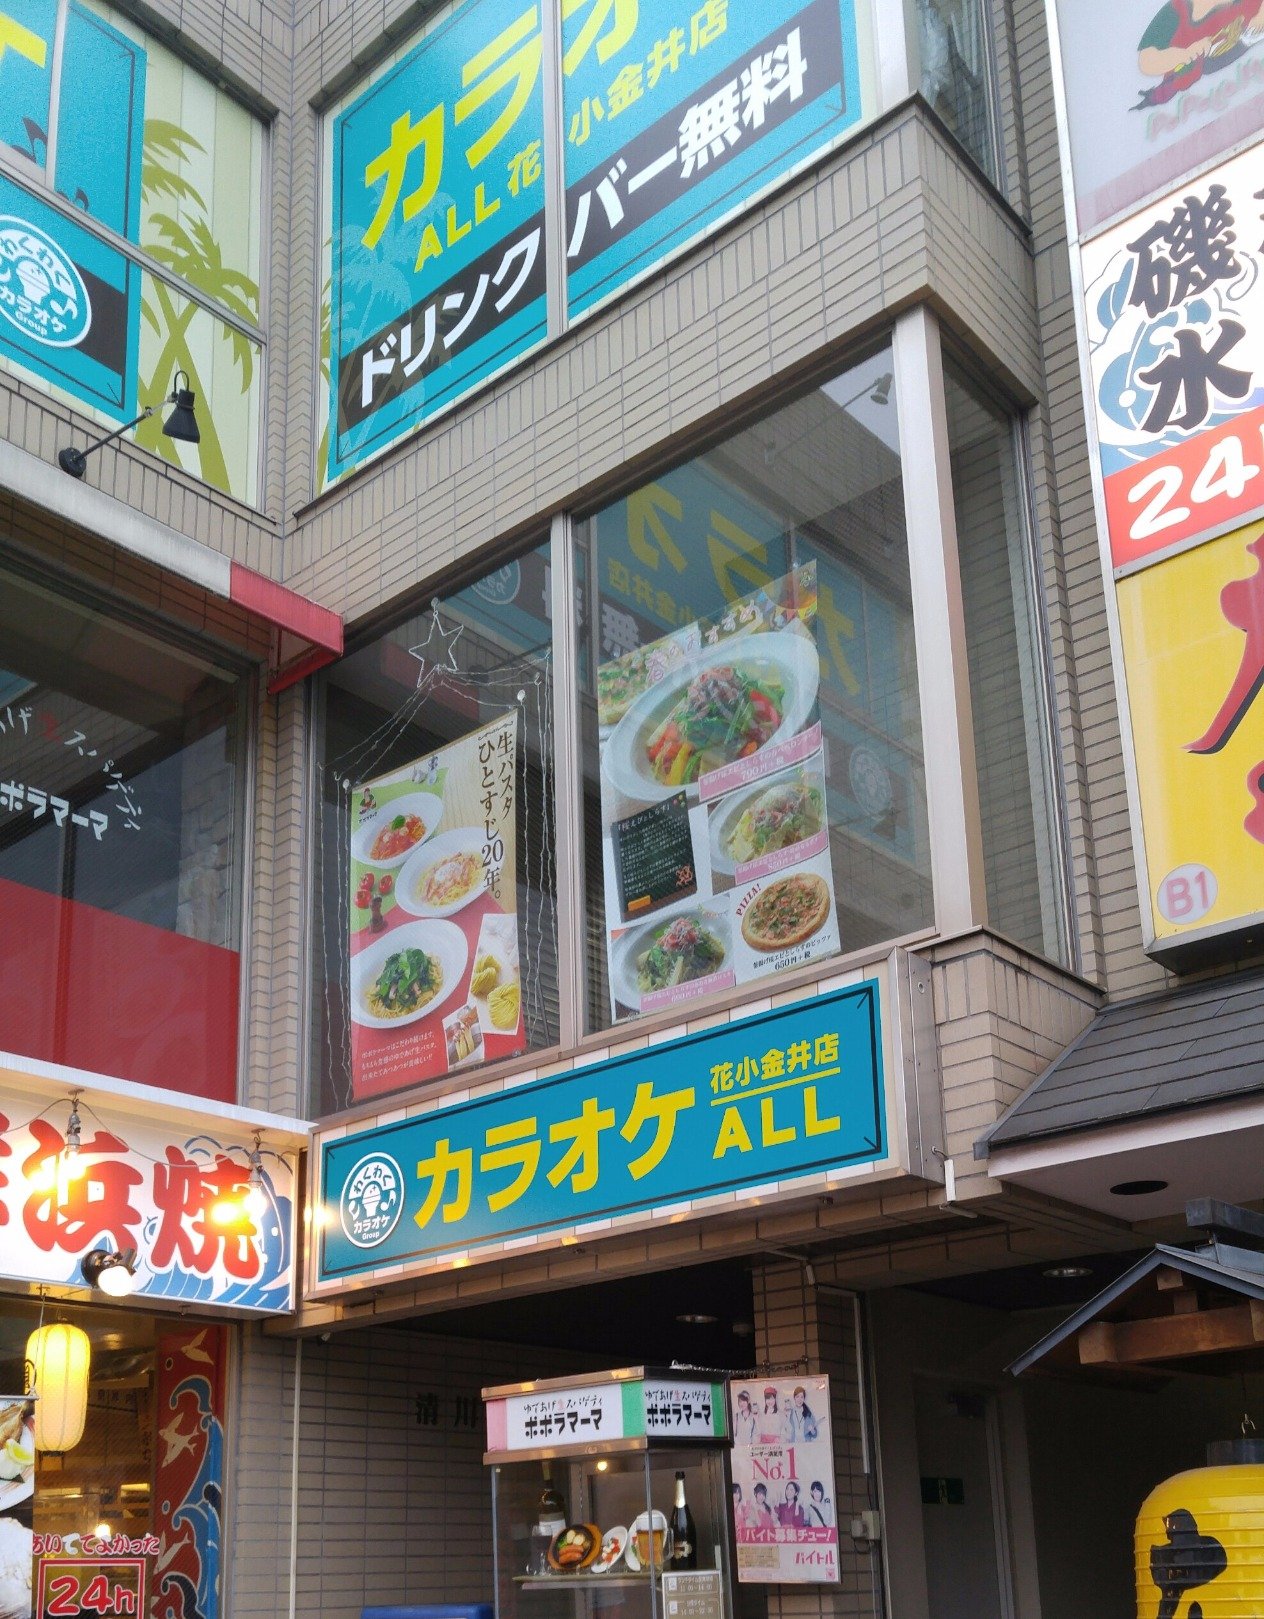 花小金井駅徒歩1分 全国52店舗展開中のわくわくカラオケグループの店舗です♪